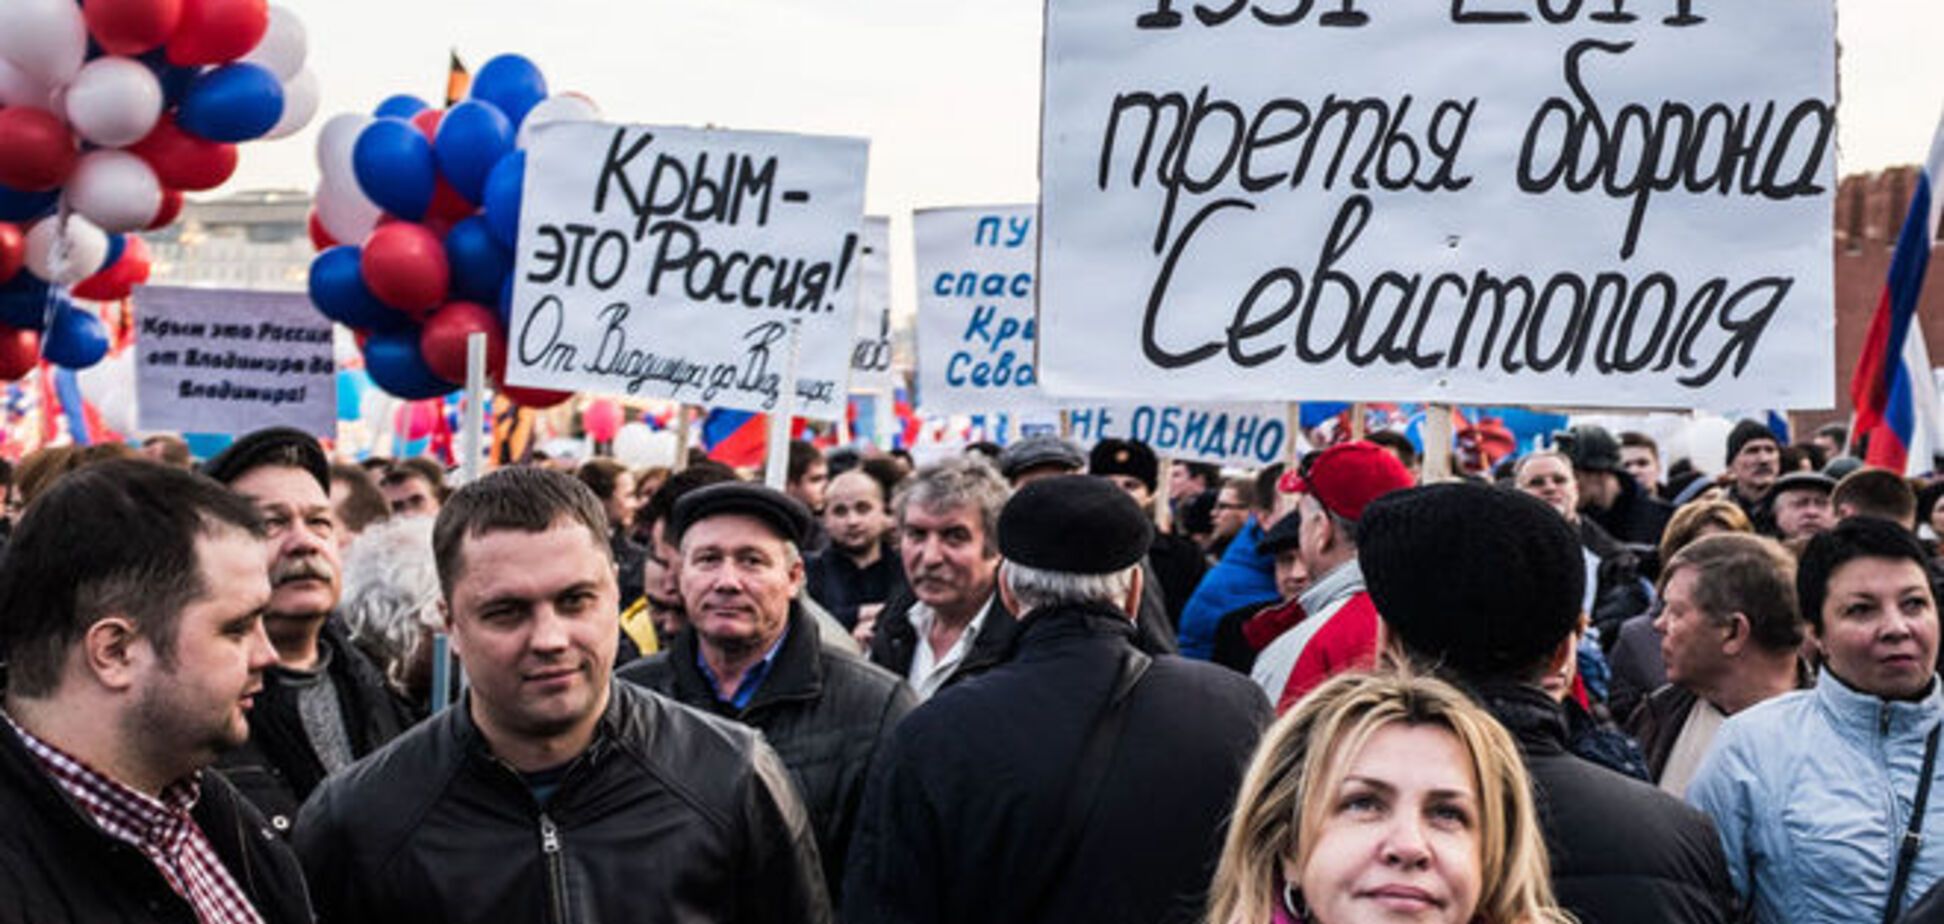 Конфуз перед 'крымским шабашом' в Москве: ведущий требовал гонорар в долларах